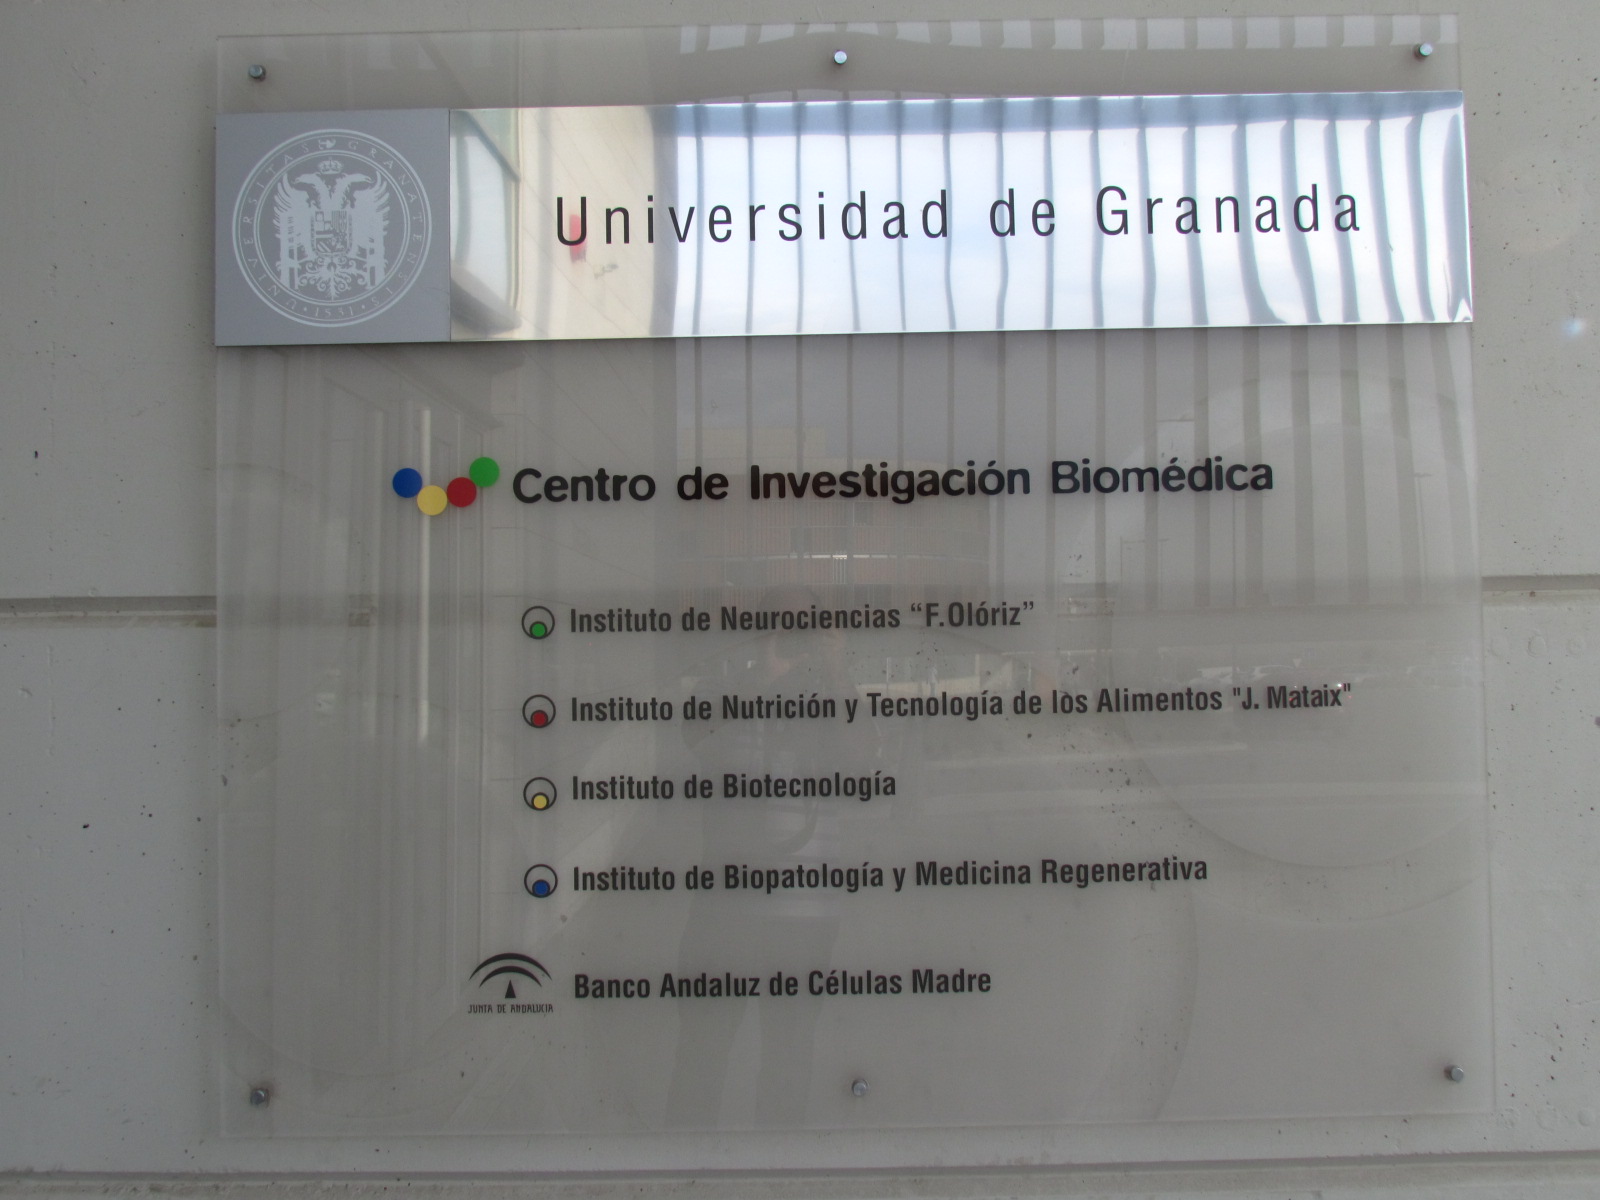 Cartel donde se puede leer Universidad de Granada Centro de investigación Biomética